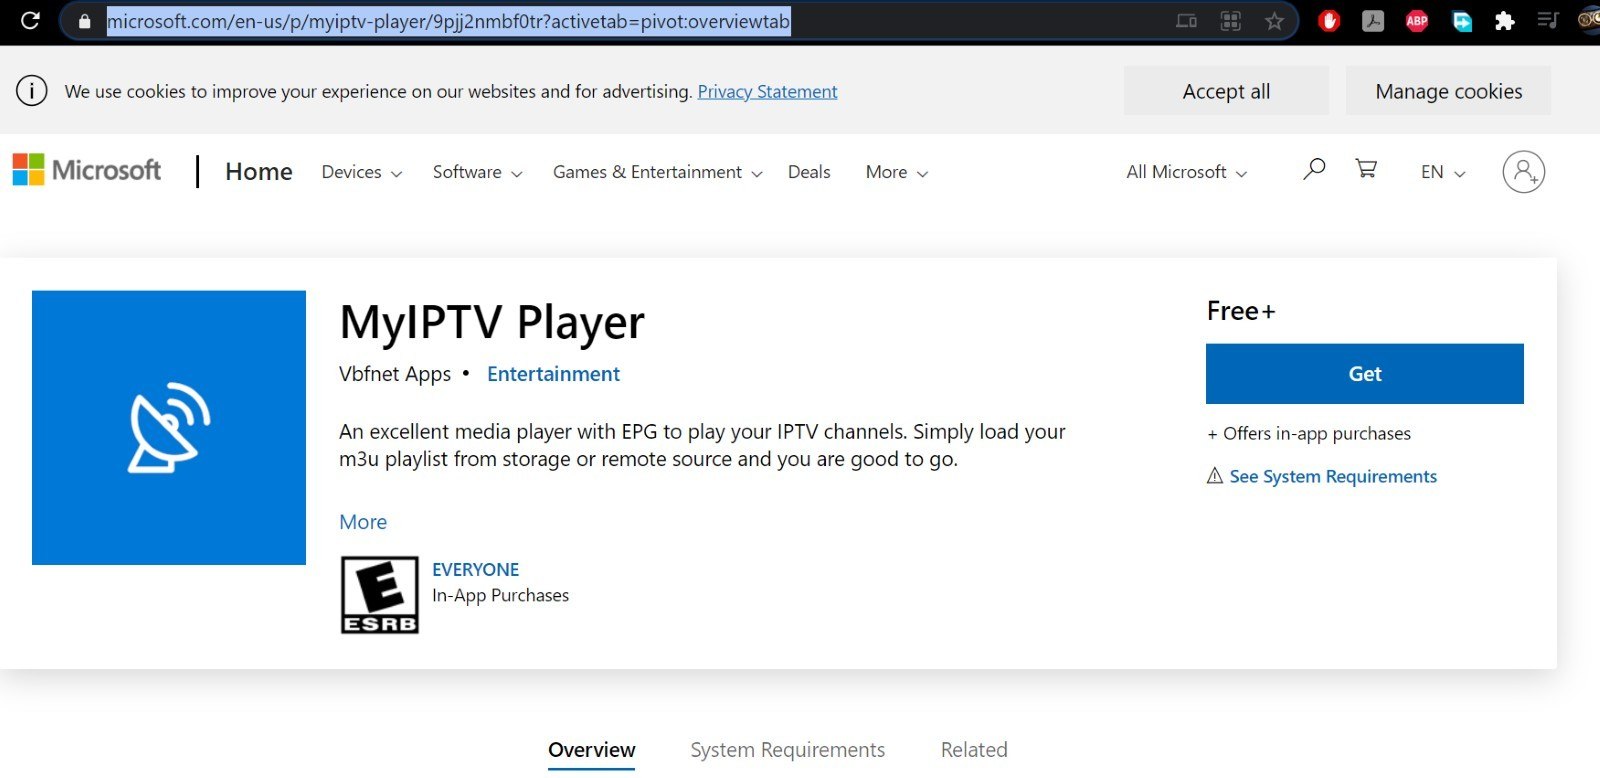 How to Setup IPTV on MyIPTV Player